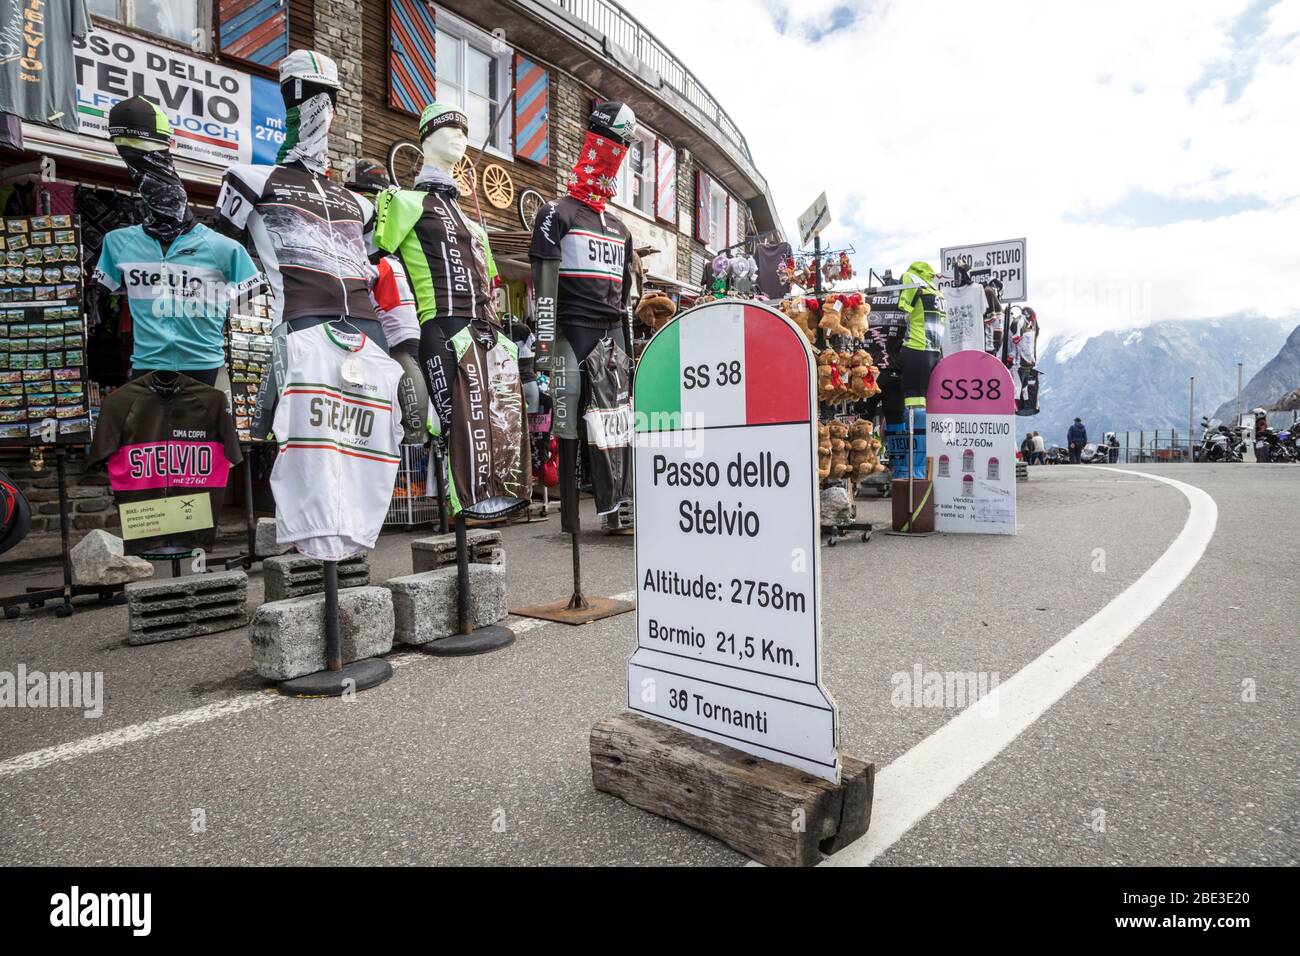 La cumbre del Passo dello Stelvio (Paso de Stelvio), Italia, con sus numerosas tiendas de souvenirs. Foto de stock